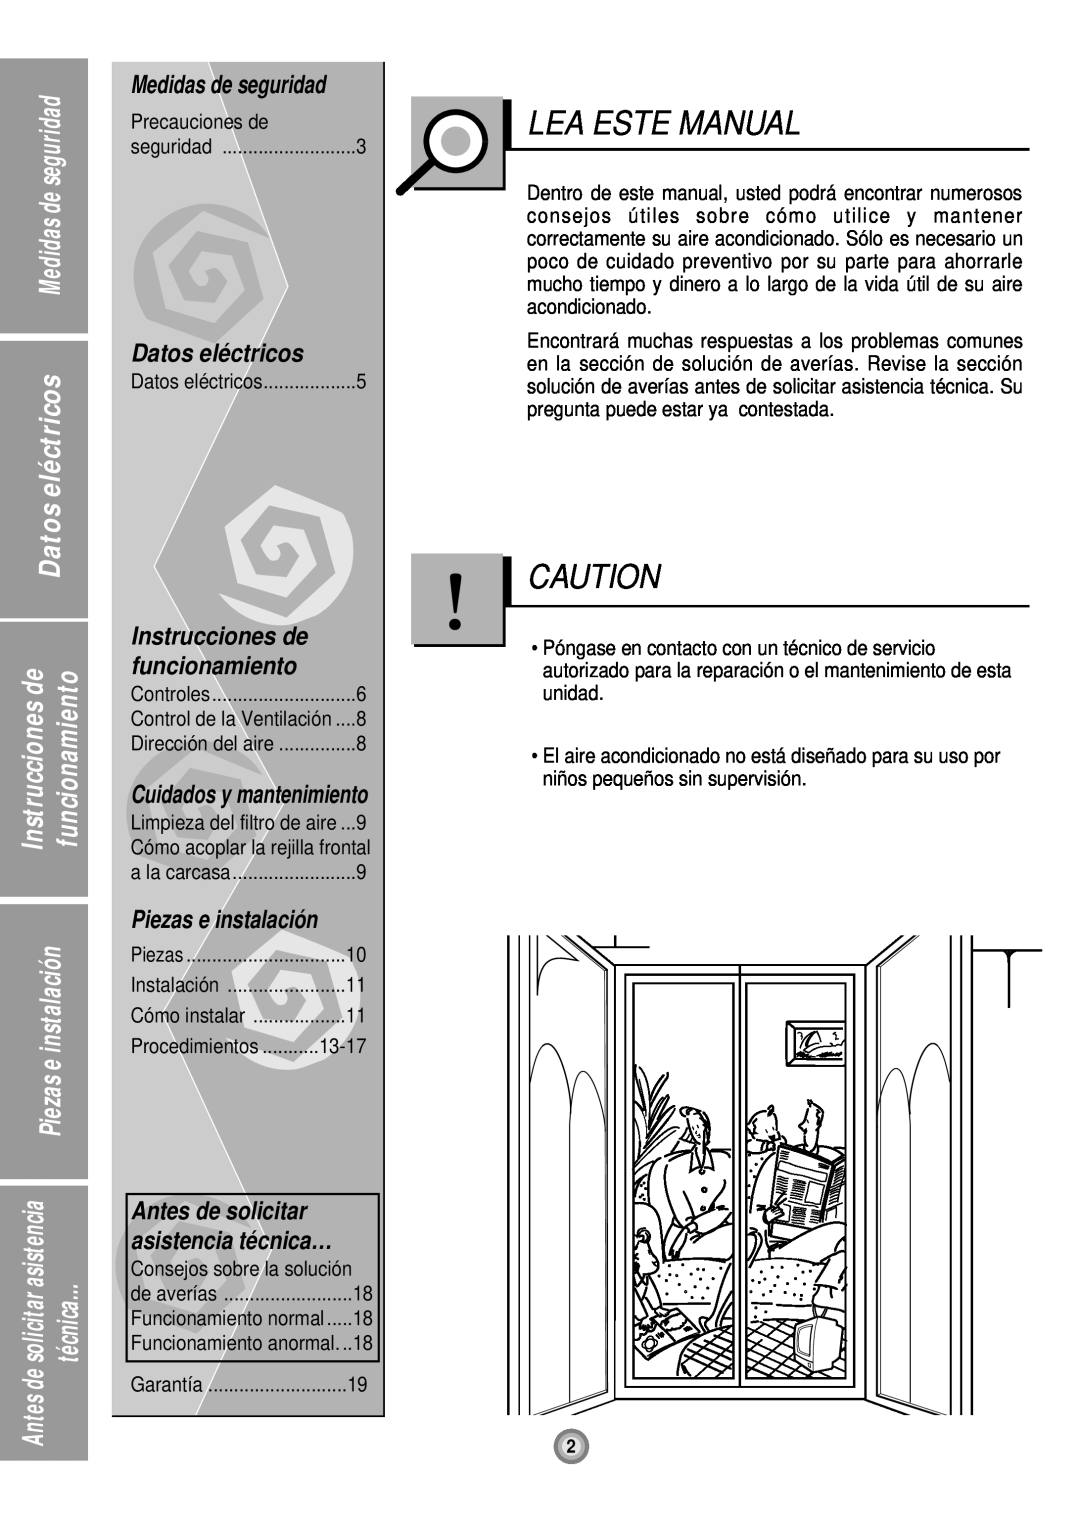 Friedrich UE12, UE10, UE08 manual Lea Este Manual, Medidas de seguridad, Datos eléctricos, funcionamiento, Antes de solicitar 